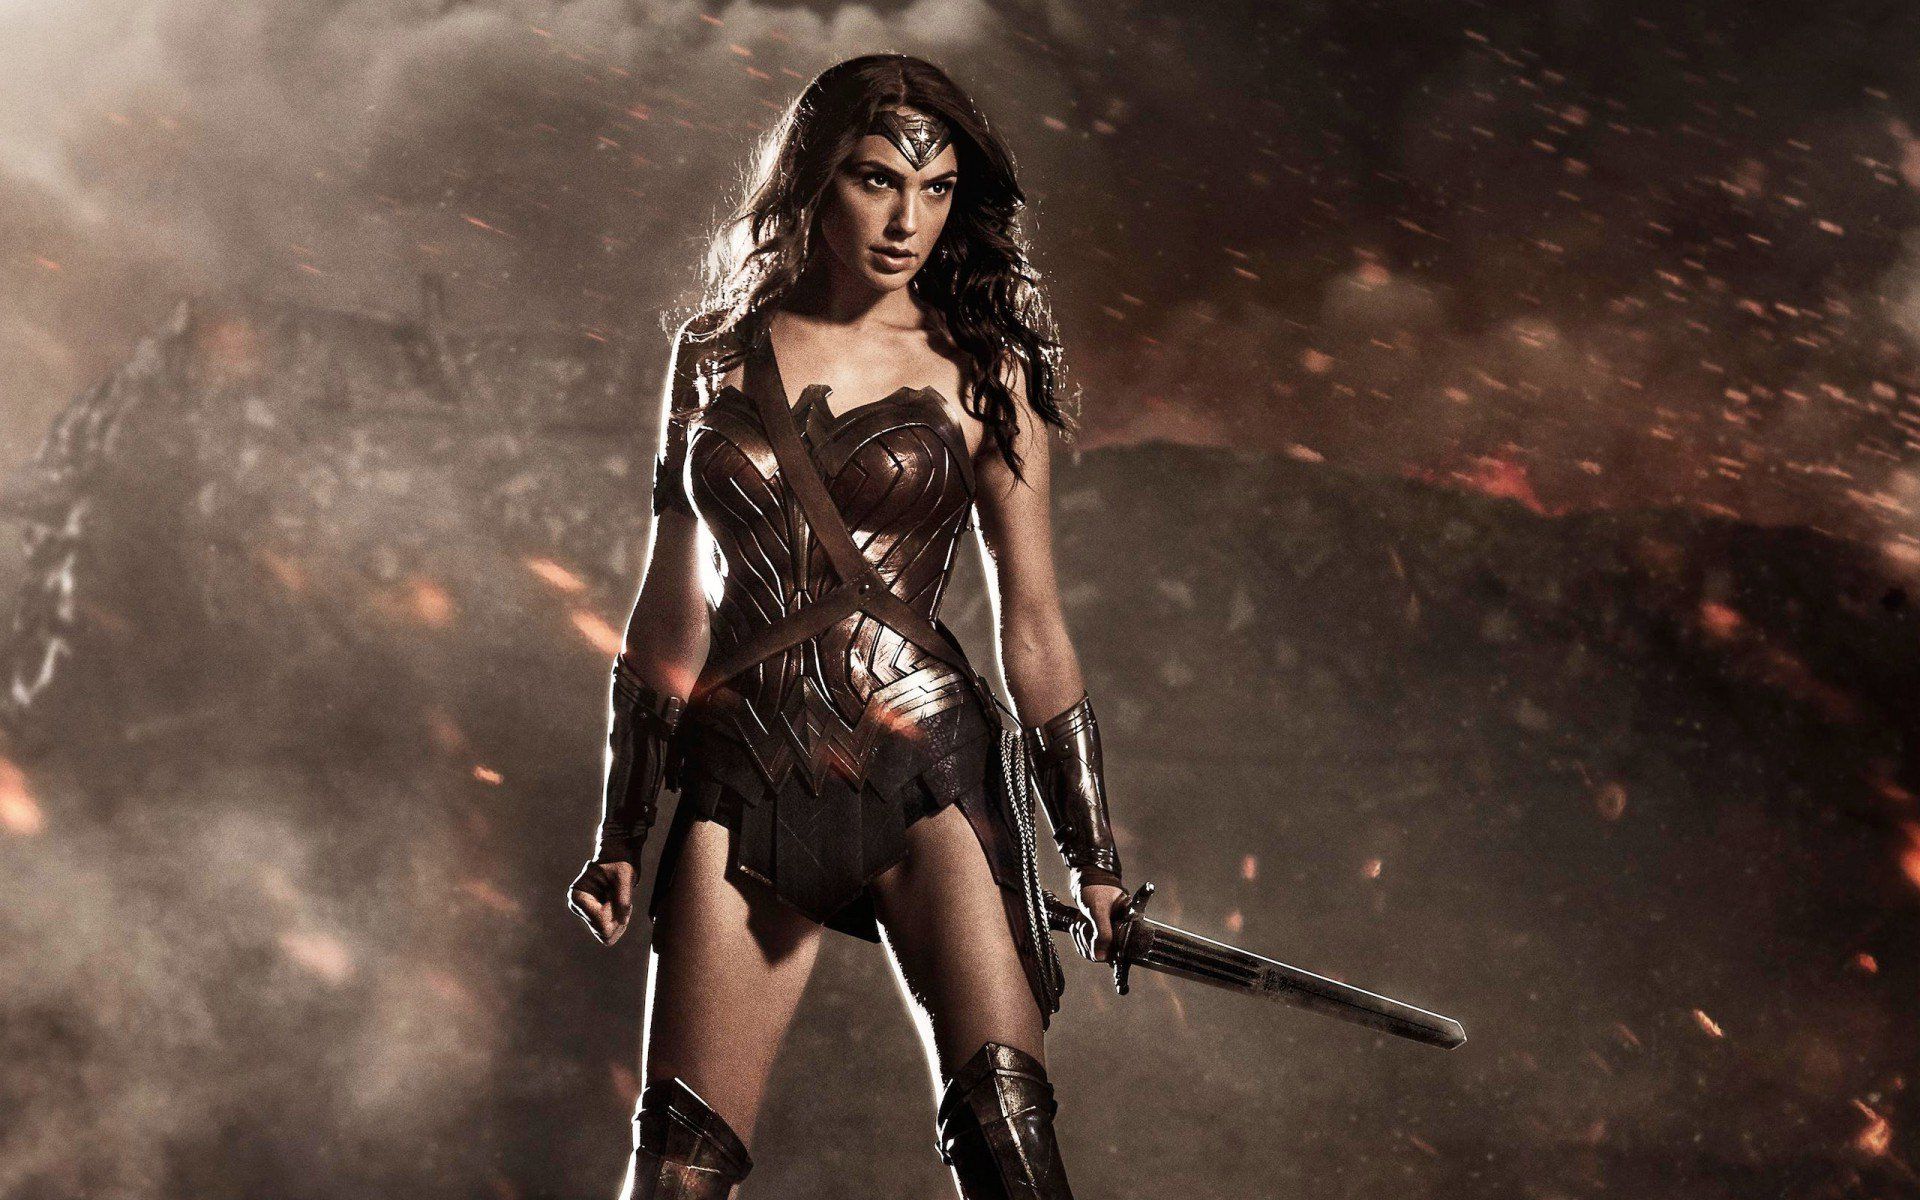 New Bvs Promo Art Featuring Wonder Woman By Manofsteel Fans On